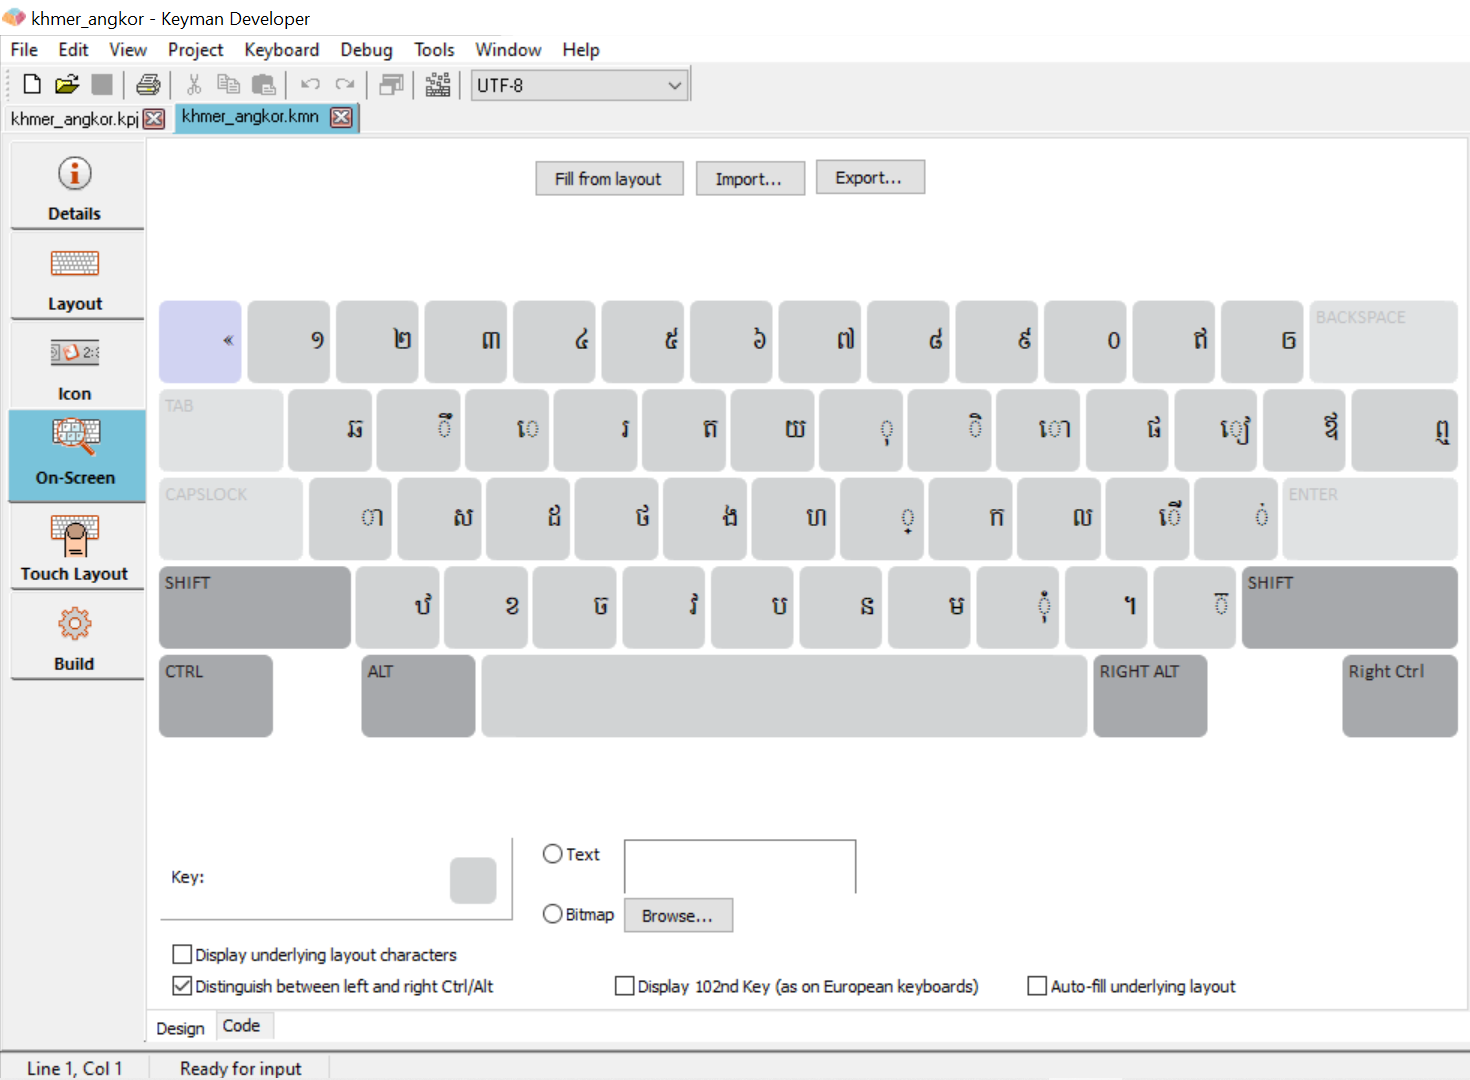 Keyboard Editor - On-Screen tab